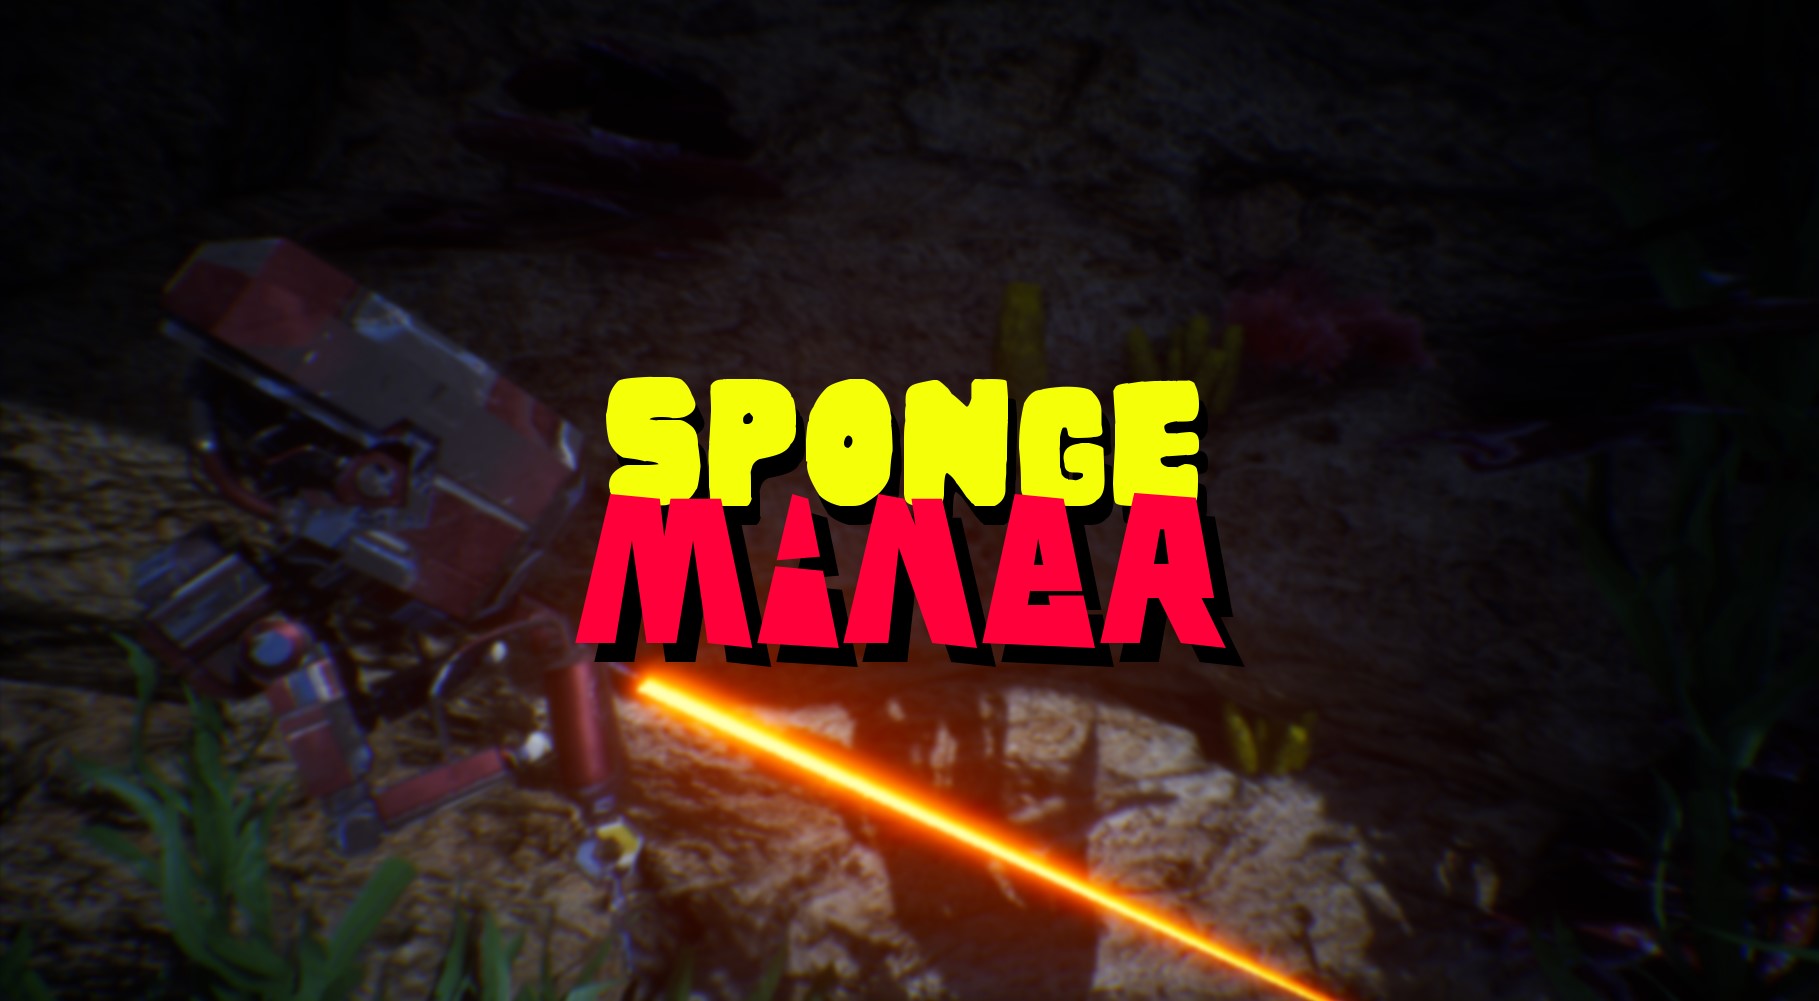 SpongeMiner